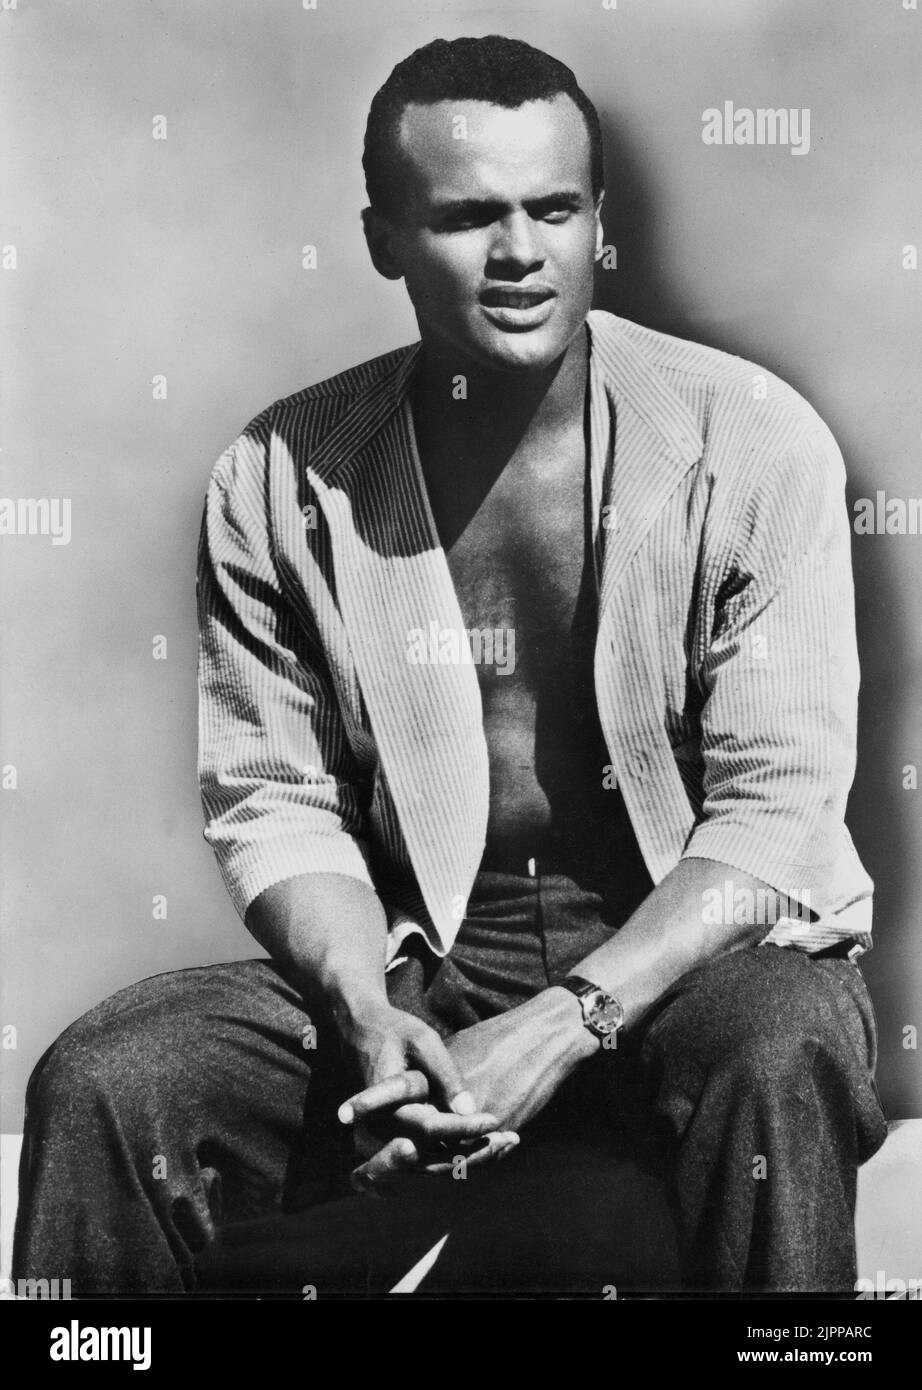 1954 , USA : The movie actor and singer  HARRY BELAFONTE ( New York , NY 1 march 1927 ) - POP MUSIC - MUSICA - CINEMA - calypso rock - portrait - ritratto - Bellafonte - torso nudo - barechested - cantante - orologio da polso - swatch - attore di colore  ----  Archivio GBB Stock Photo